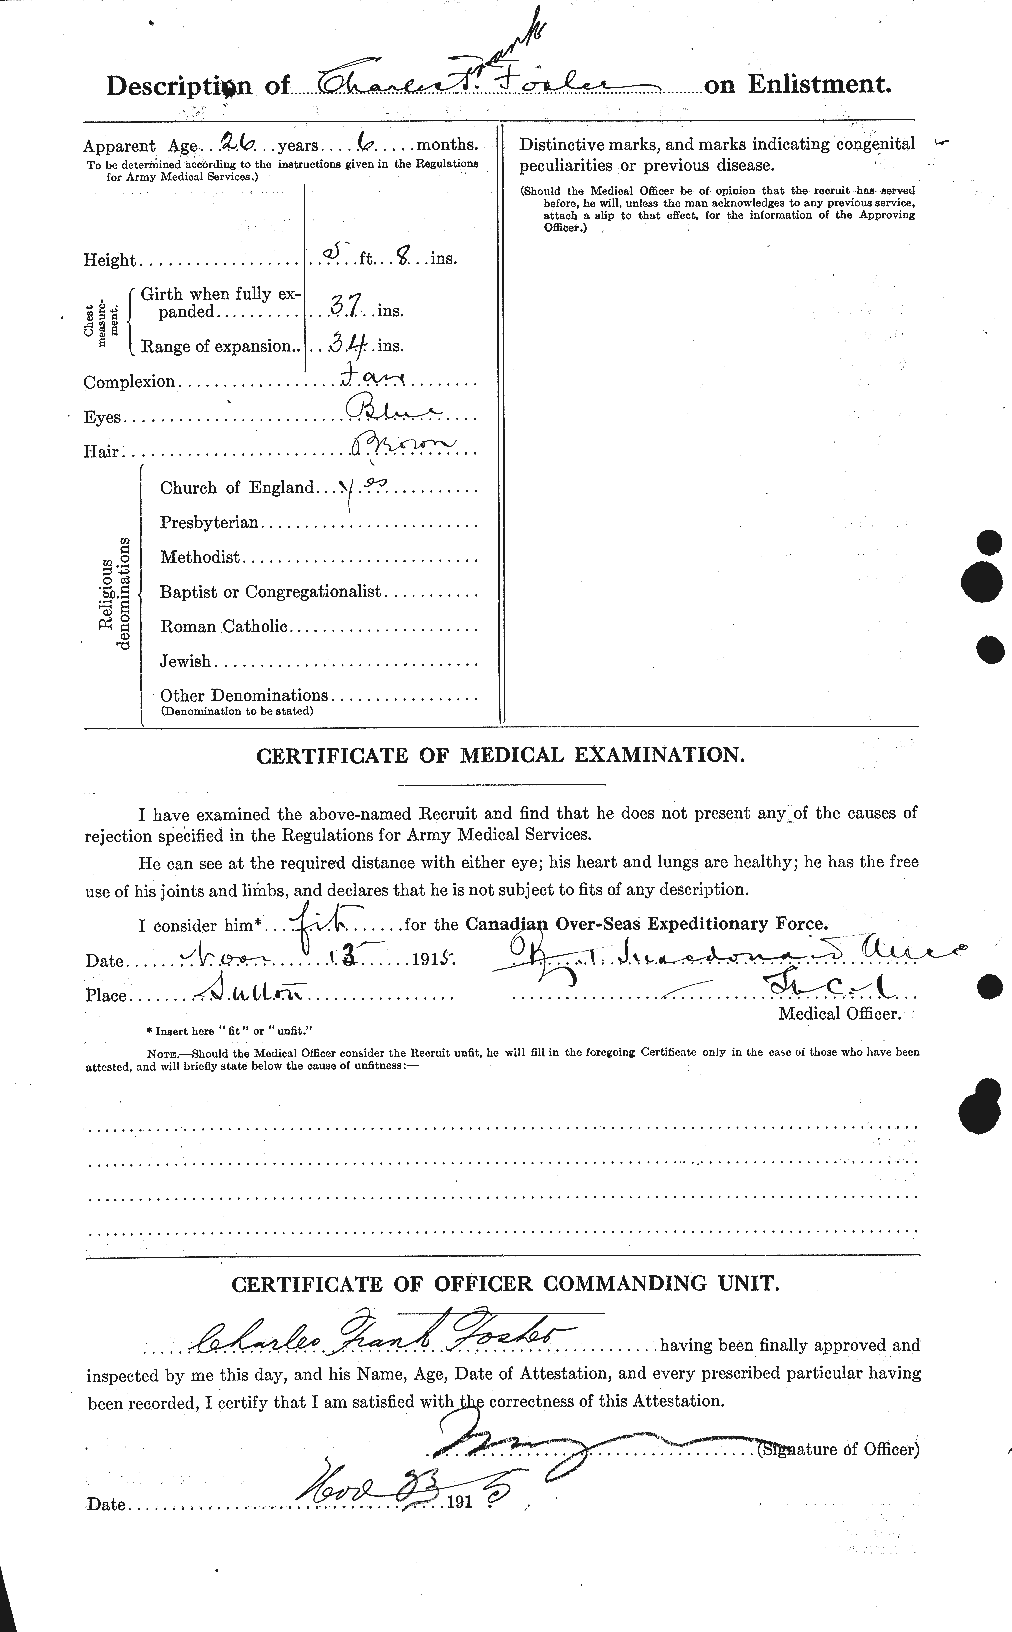 Dossiers du Personnel de la Première Guerre mondiale - CEC 330513b